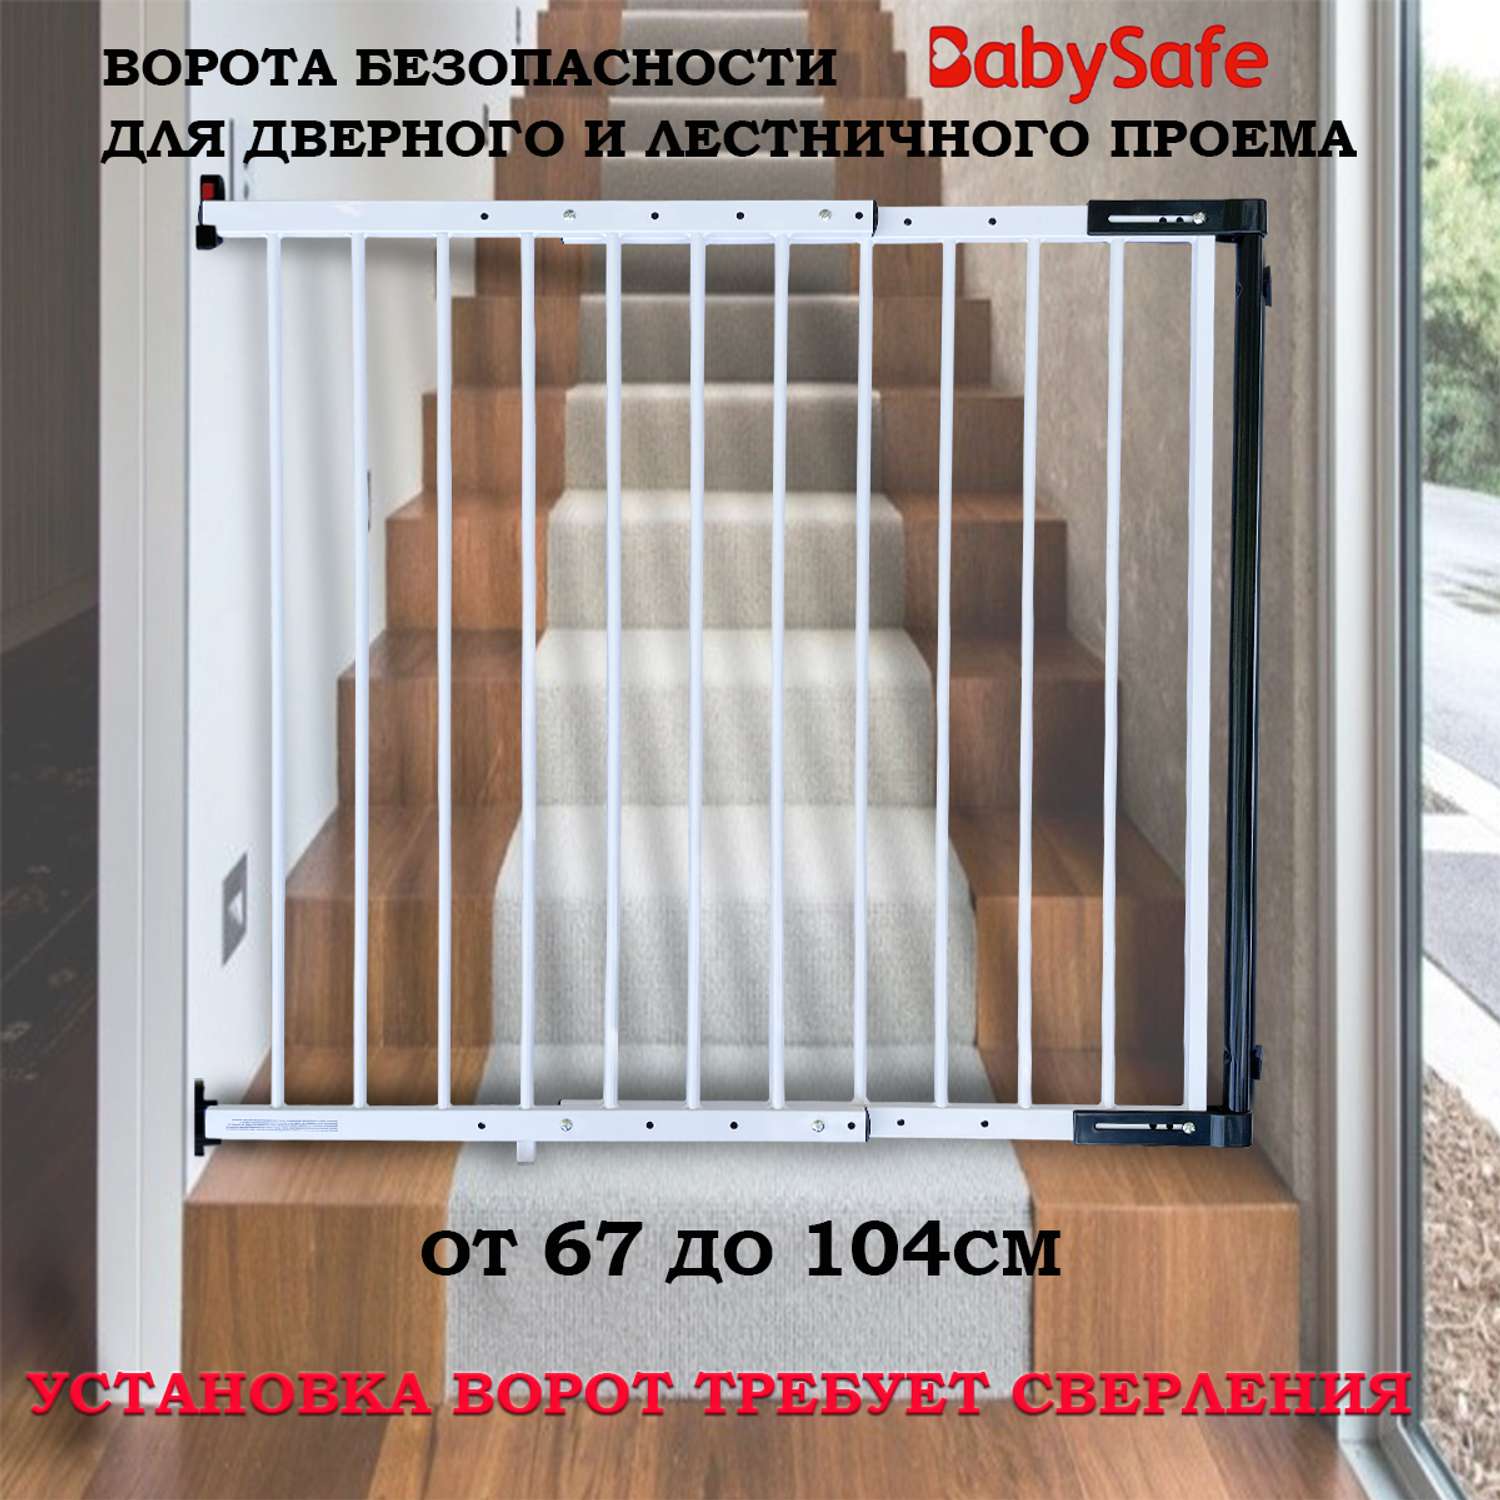 Барьер-калитка Baby Safe в дверной проем 67-104 см XY-004 - фото 1